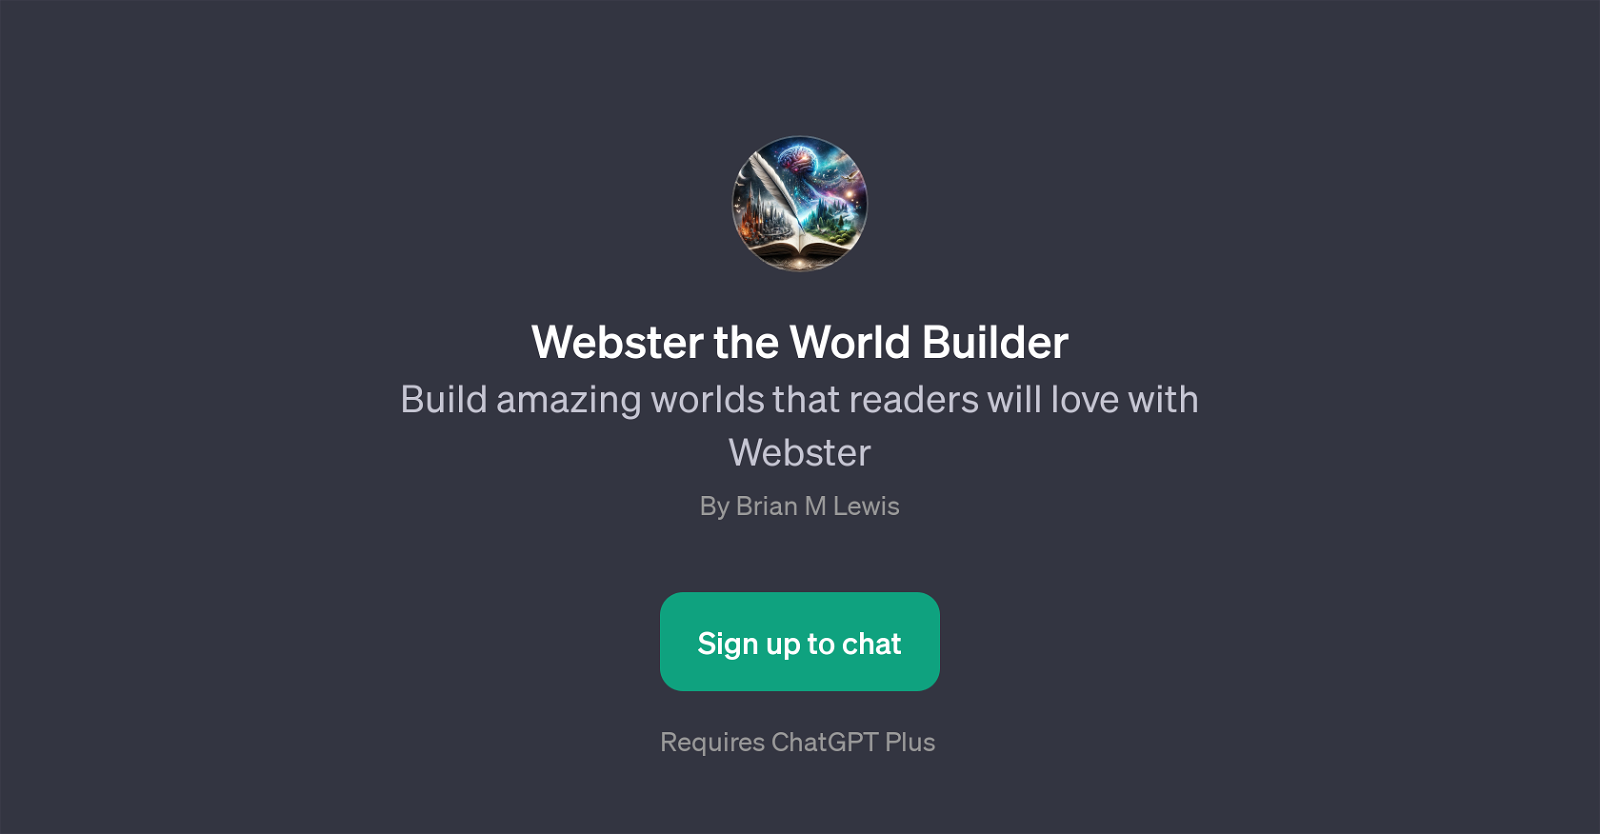 Webster the World Builder website